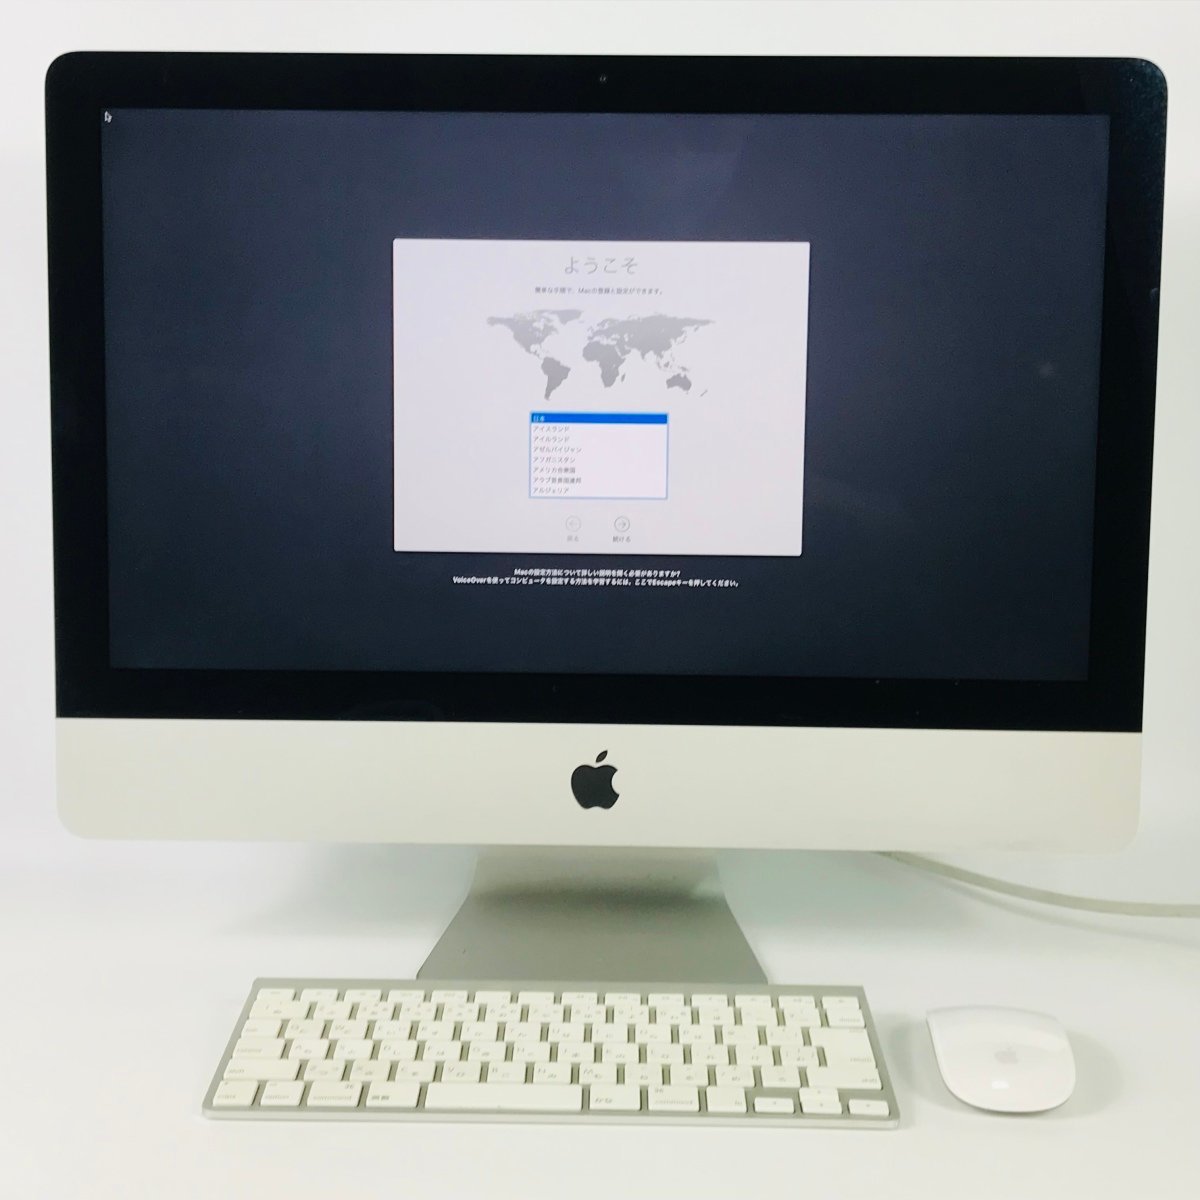 クリアランス割引品  2013) (Late ME086J/A 21.5インチ Apple iMac デスクトップ型PC